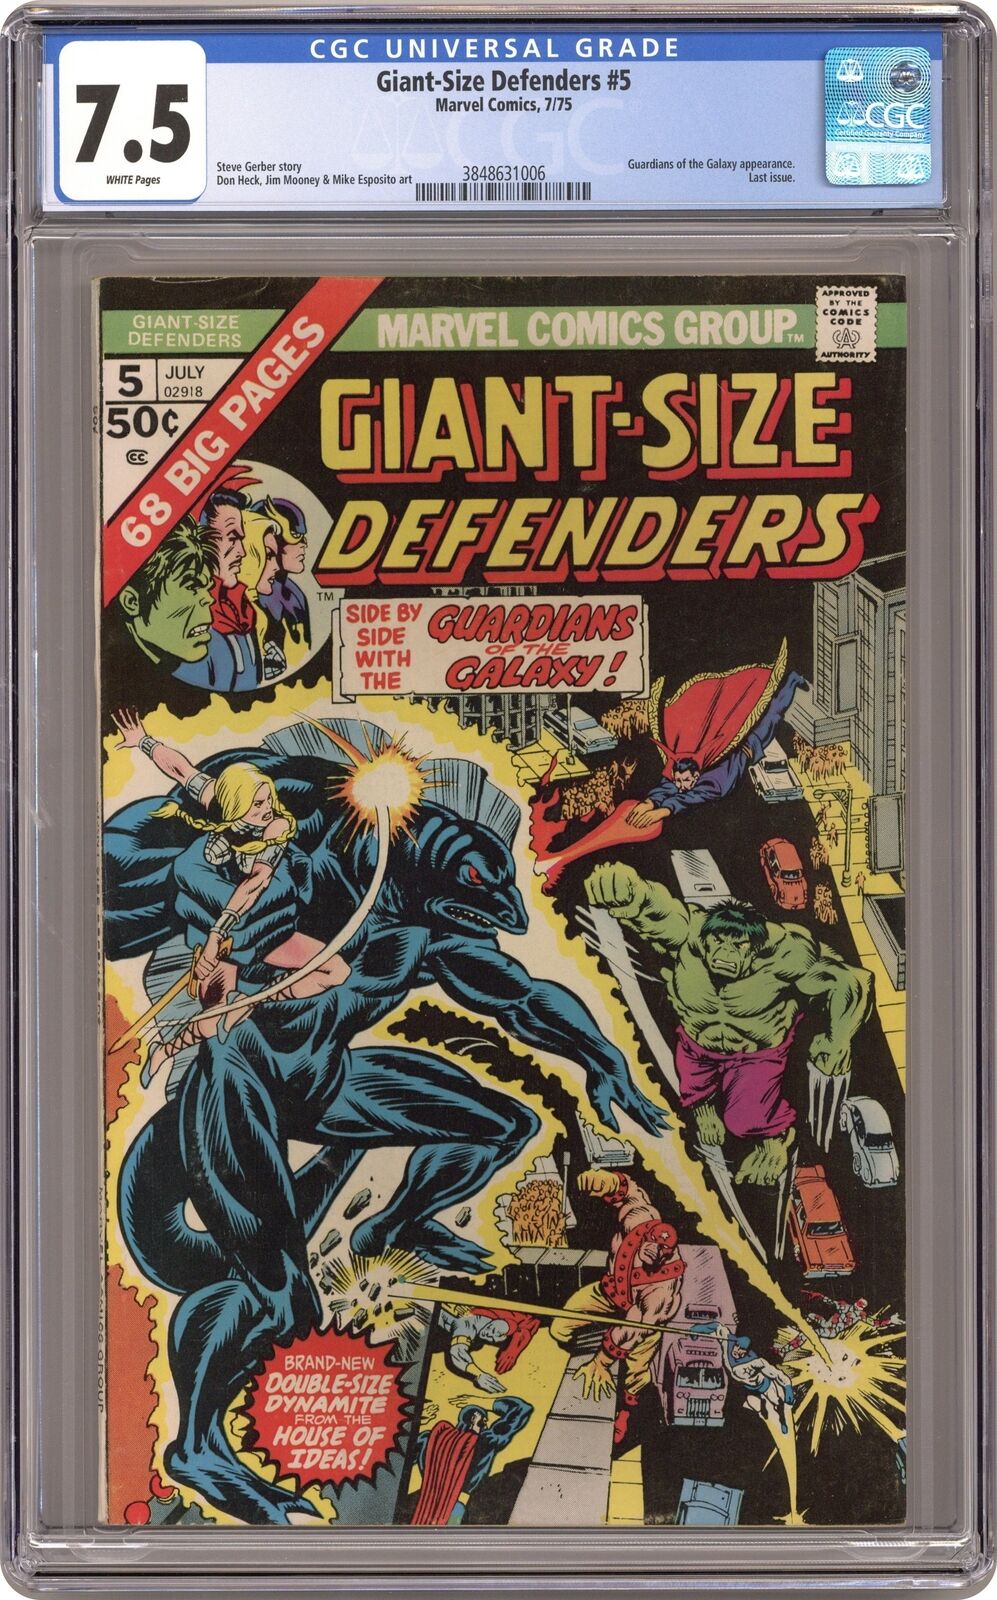 Giant Size Defenders #5 CGC 7.5 1975 3848631006